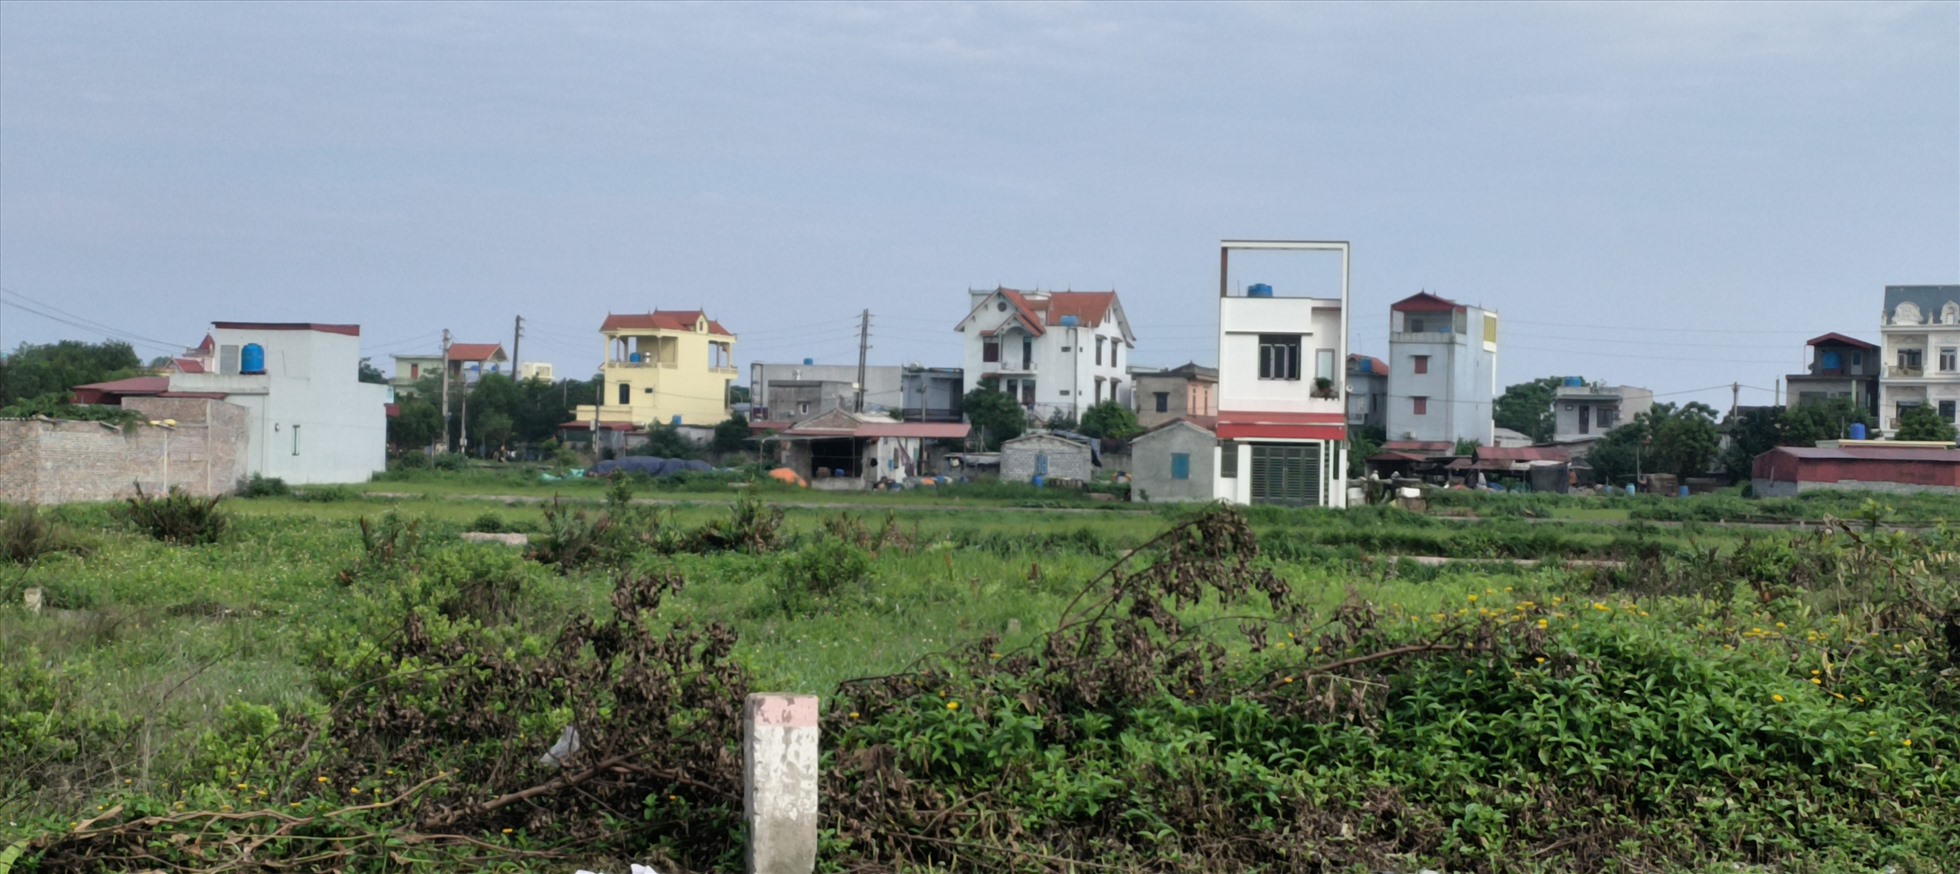 Khu dân cư mới ở xóm 8, thôn Quang Lang Đoài mới thực hiện quy hoạch, đấu giá chưa lâu đã phát sinh ô nhiễm môi trường từ cơ sở sản xuất, chế biến chân gà.